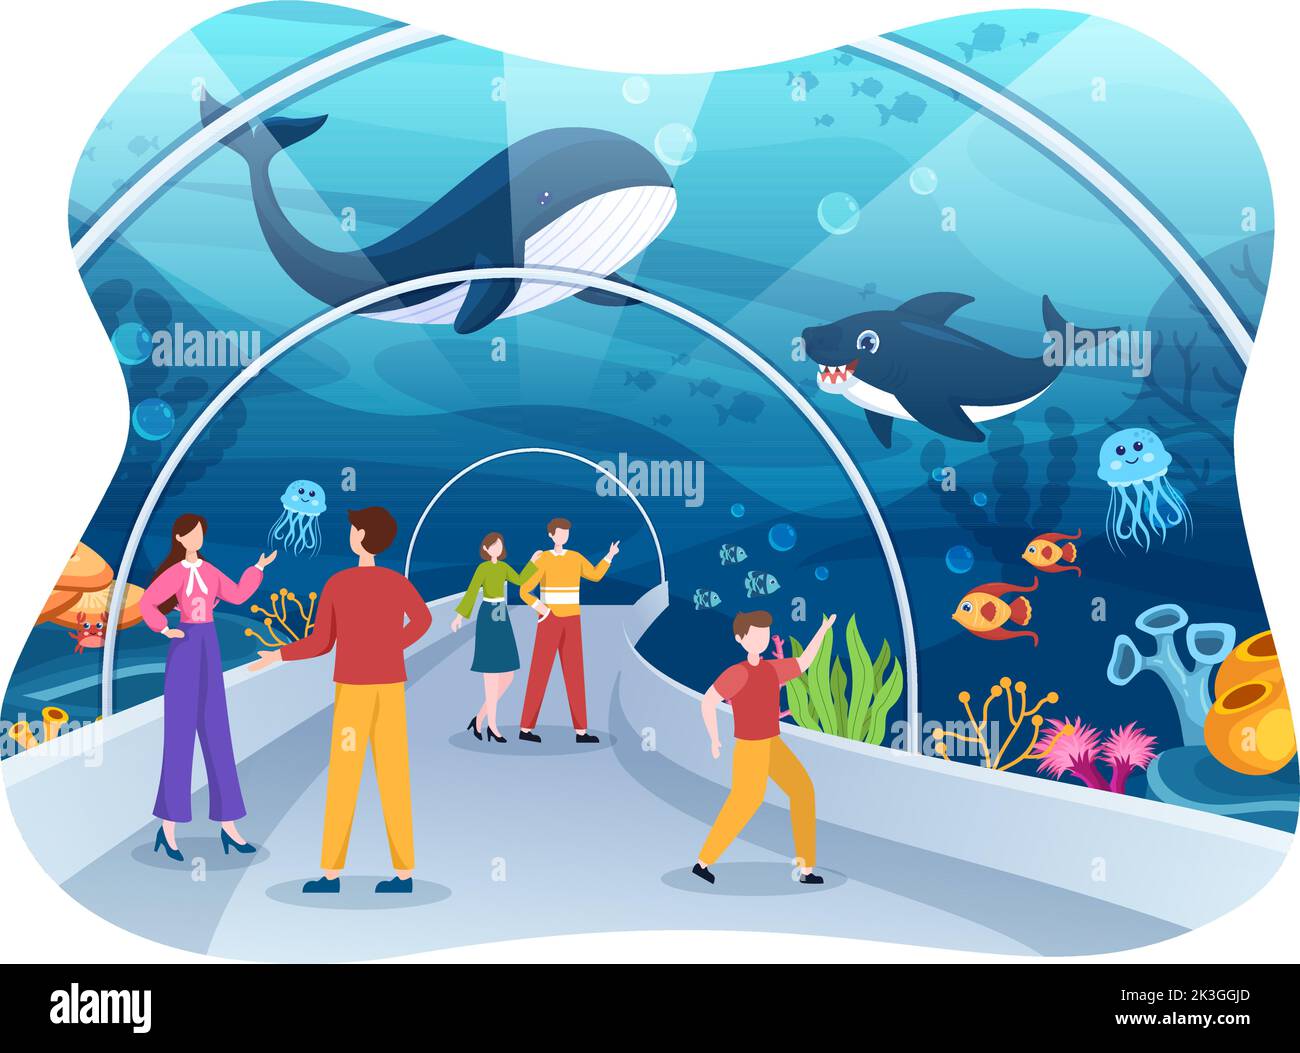 Maquette d'aquarium dessin à la main dessin à l'écran Illustration avec la famille et les enfants regardant le poisson sous-marin, la variété d'animaux marins, la flore et la faune marines Illustration de Vecteur